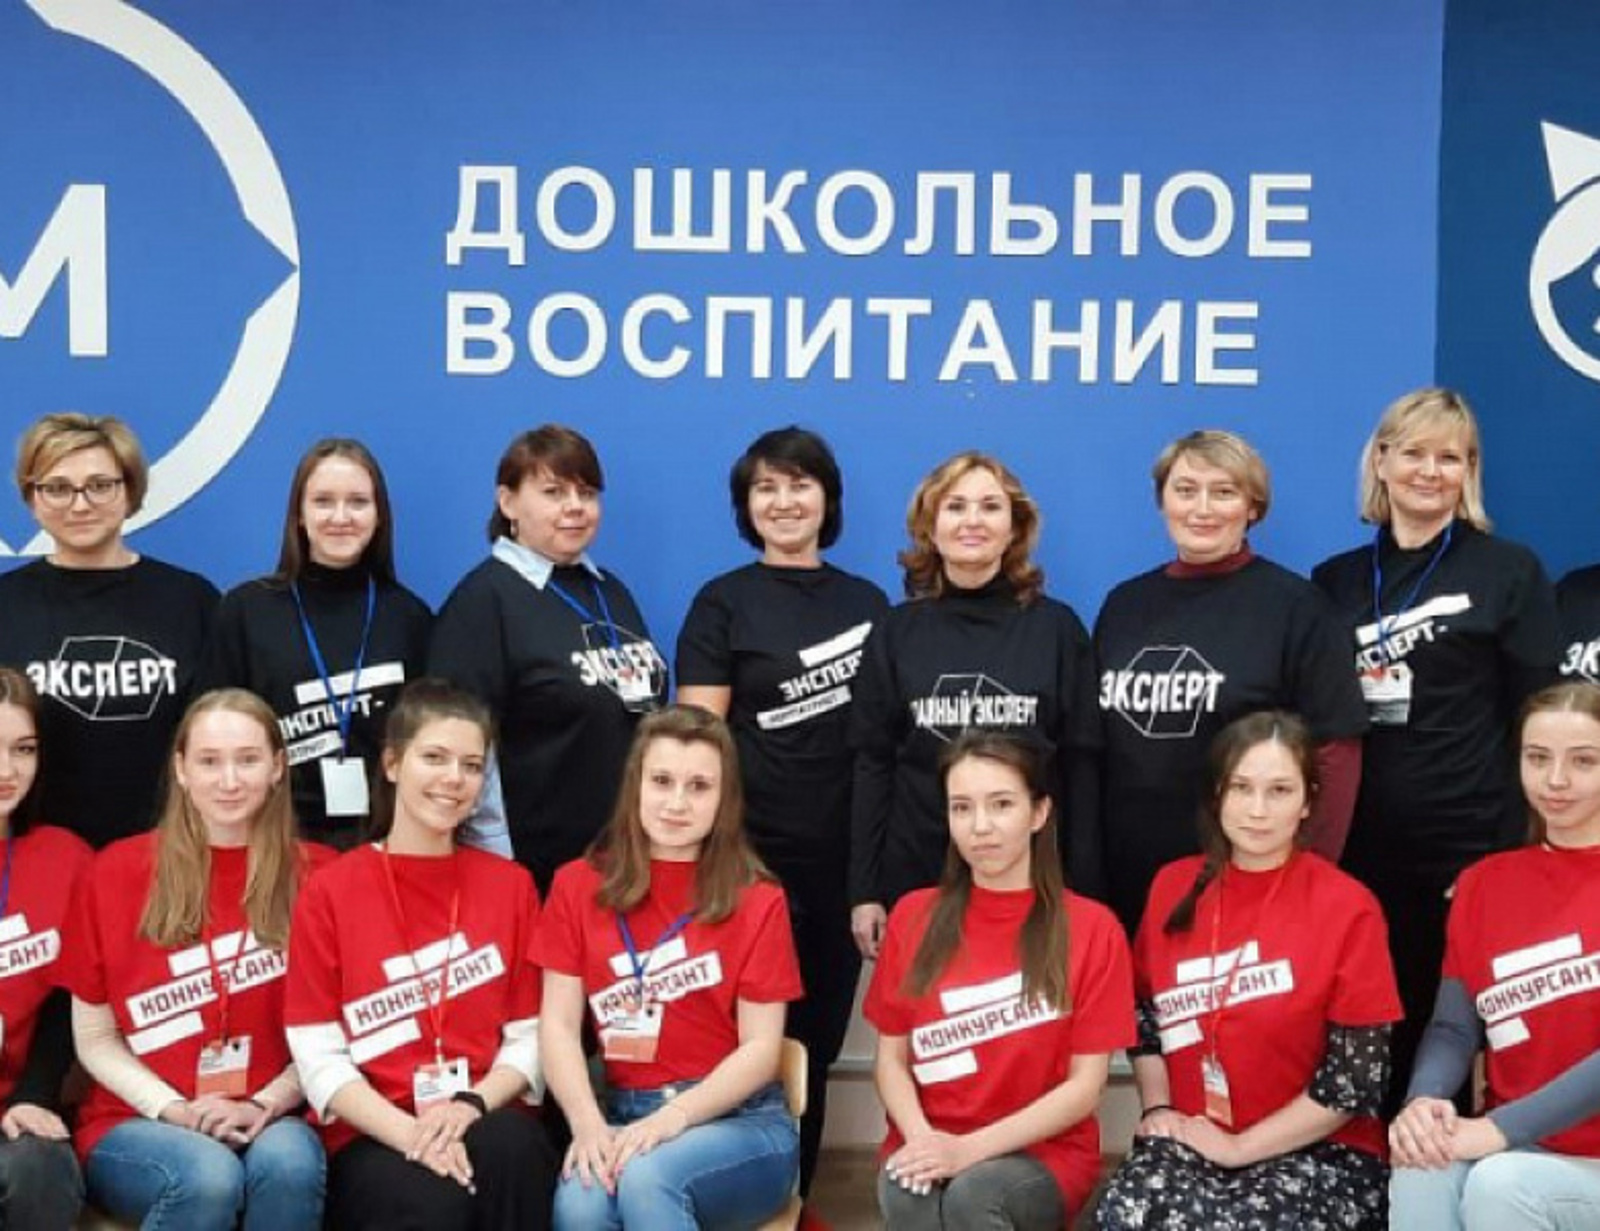 В Башкортостане прошел IV Открытый межвузовский чемпионат по стандартам Worldskills